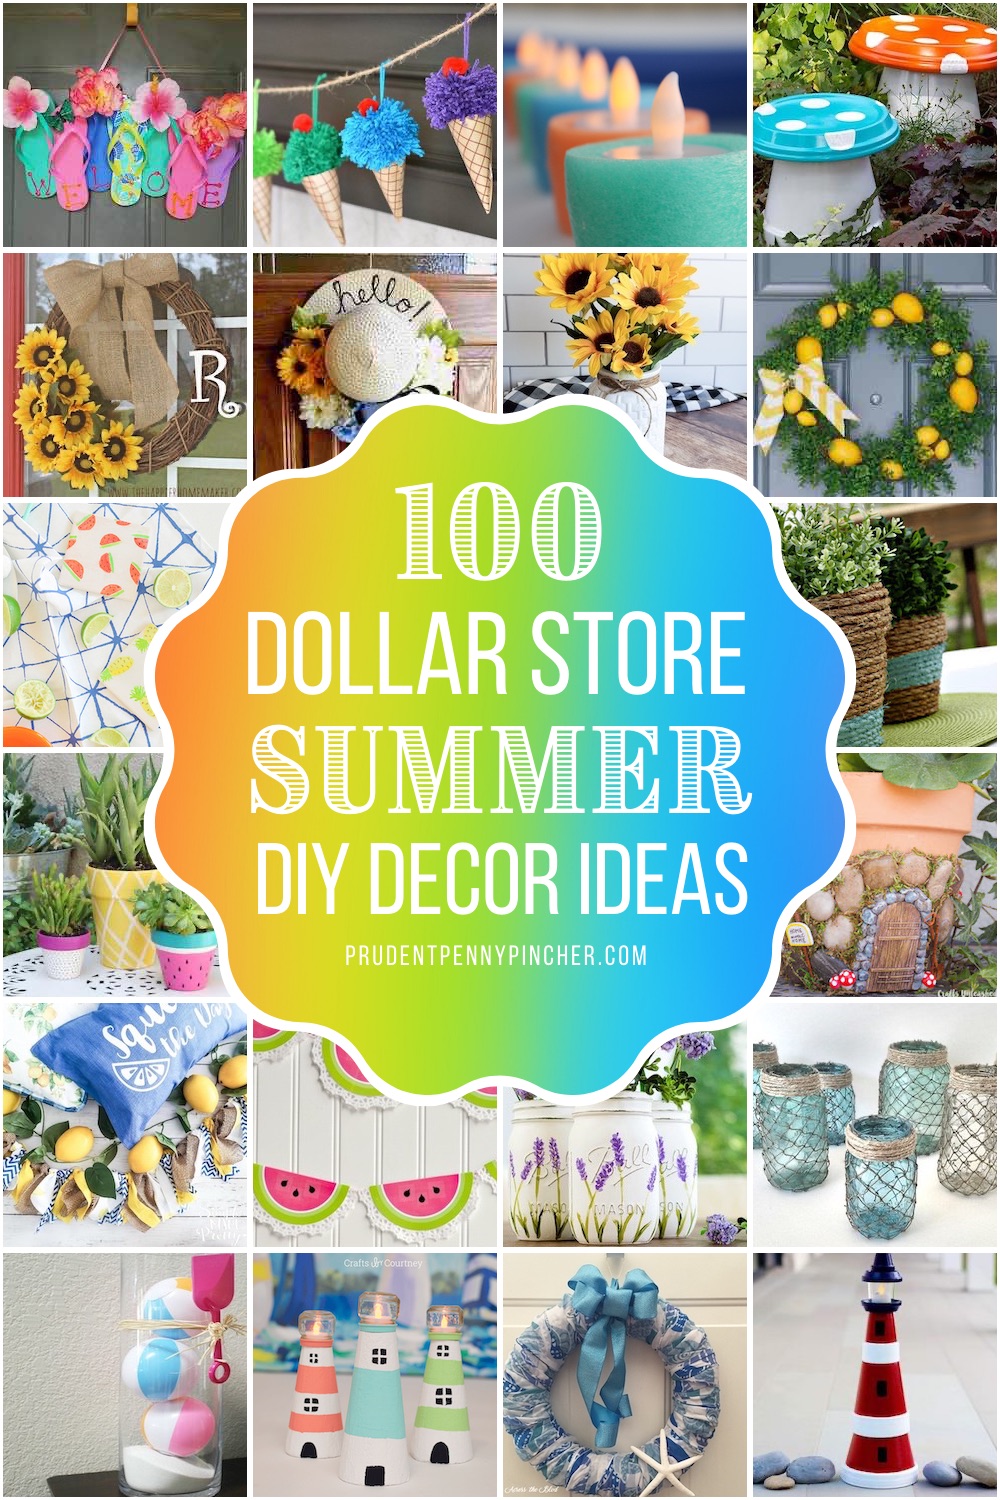 https://www.prudentpennypincher.com/wp-content/uploads/2020/04/Dollar-Store-DIY-Summer-Decor.jpg